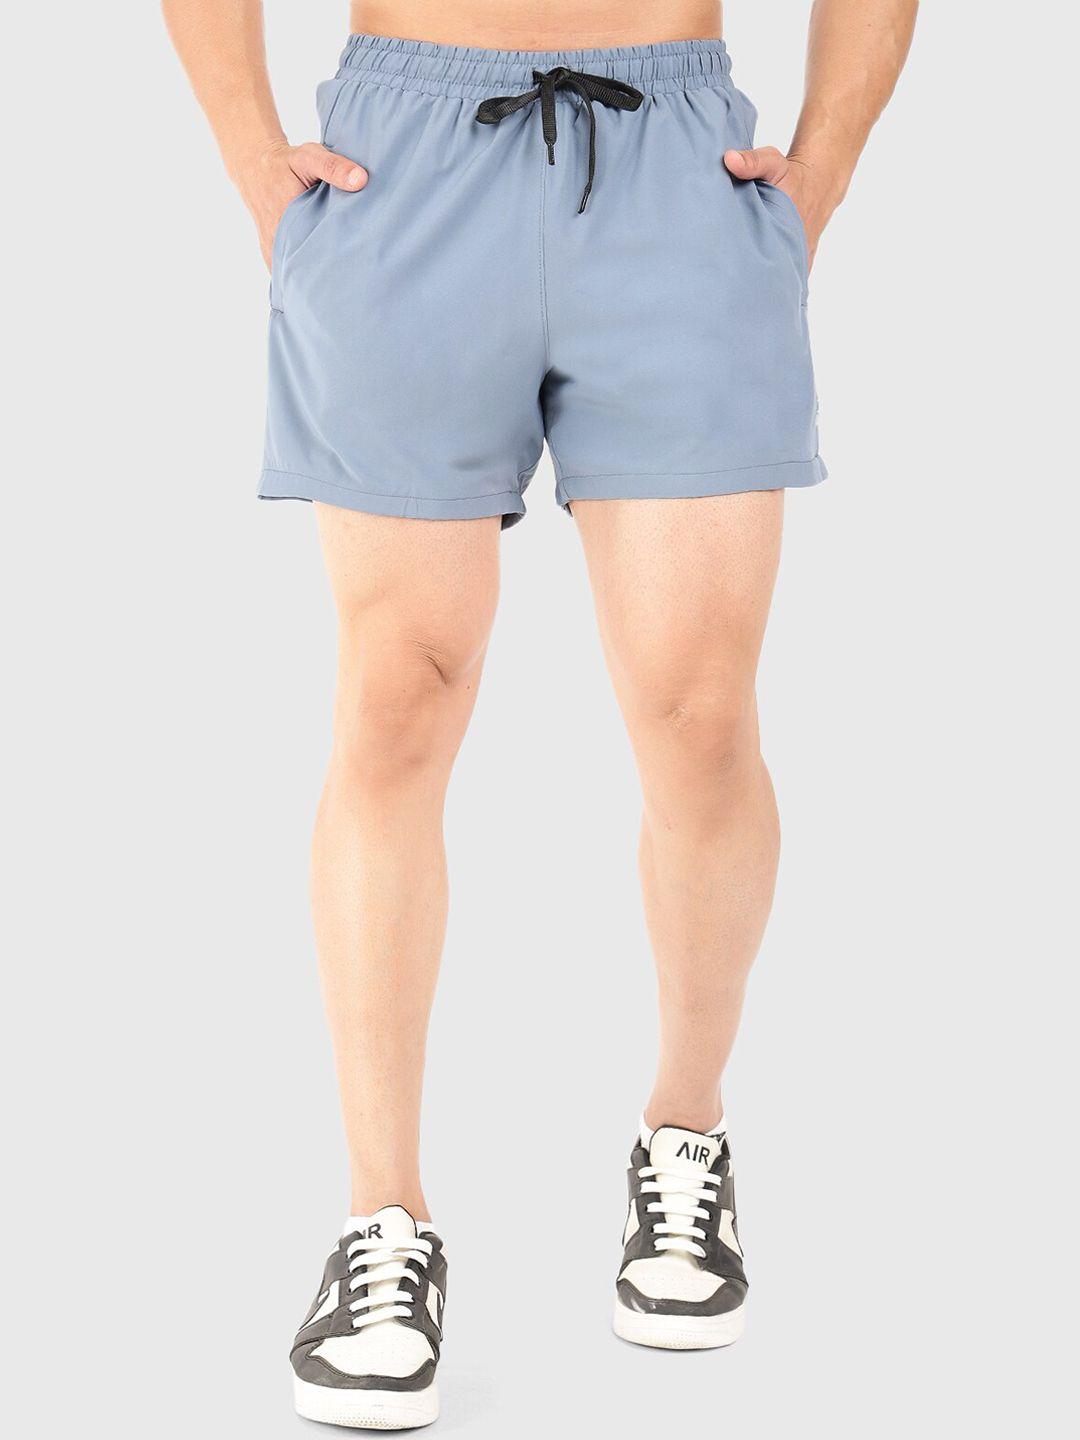 fuaark-men-mid-rise-dri-fit-sports-shorts